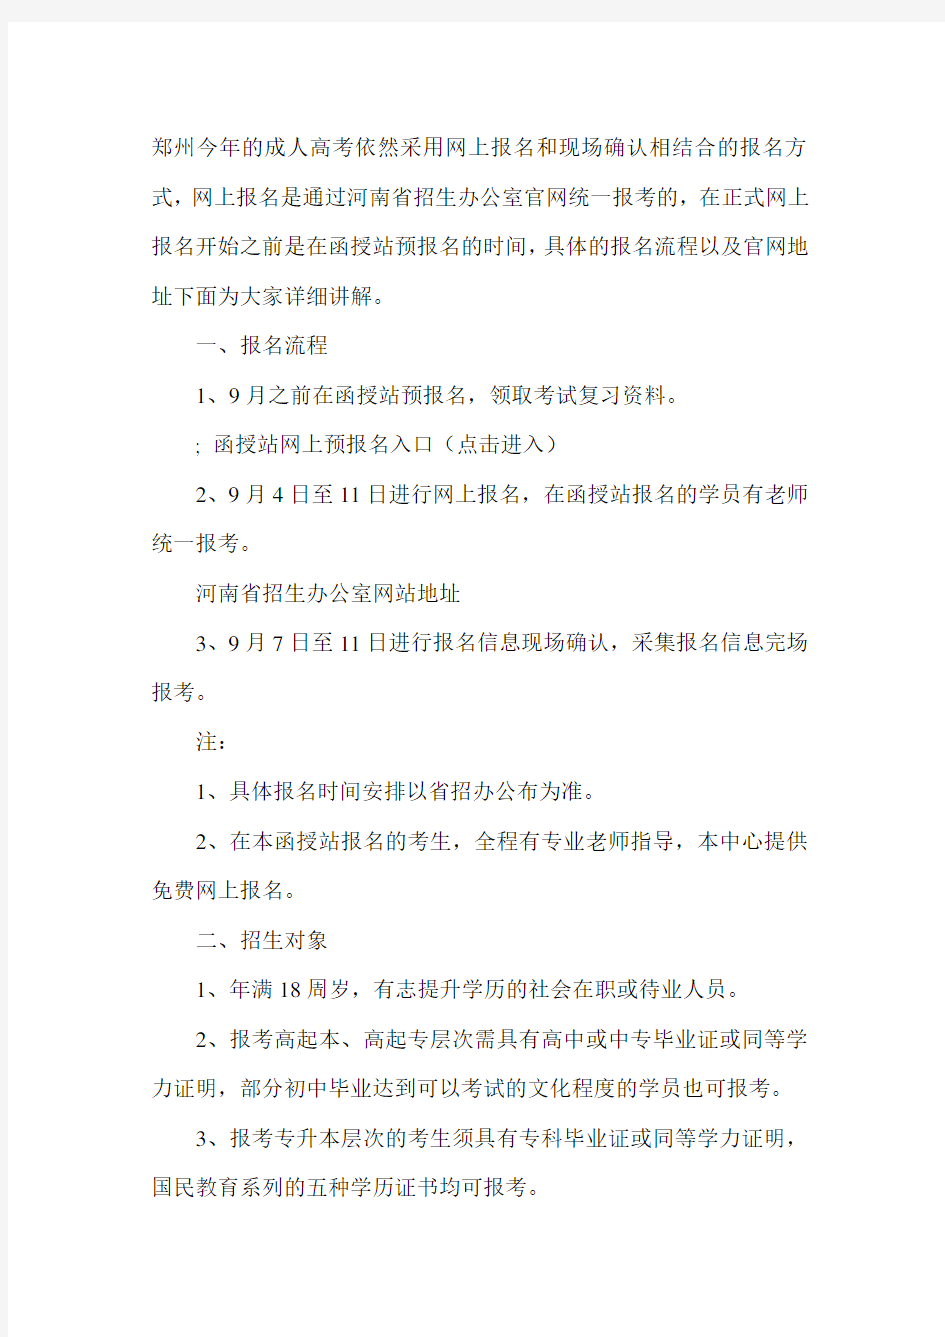 河南郑州成人高考网上报名官网地址(含报名流程)